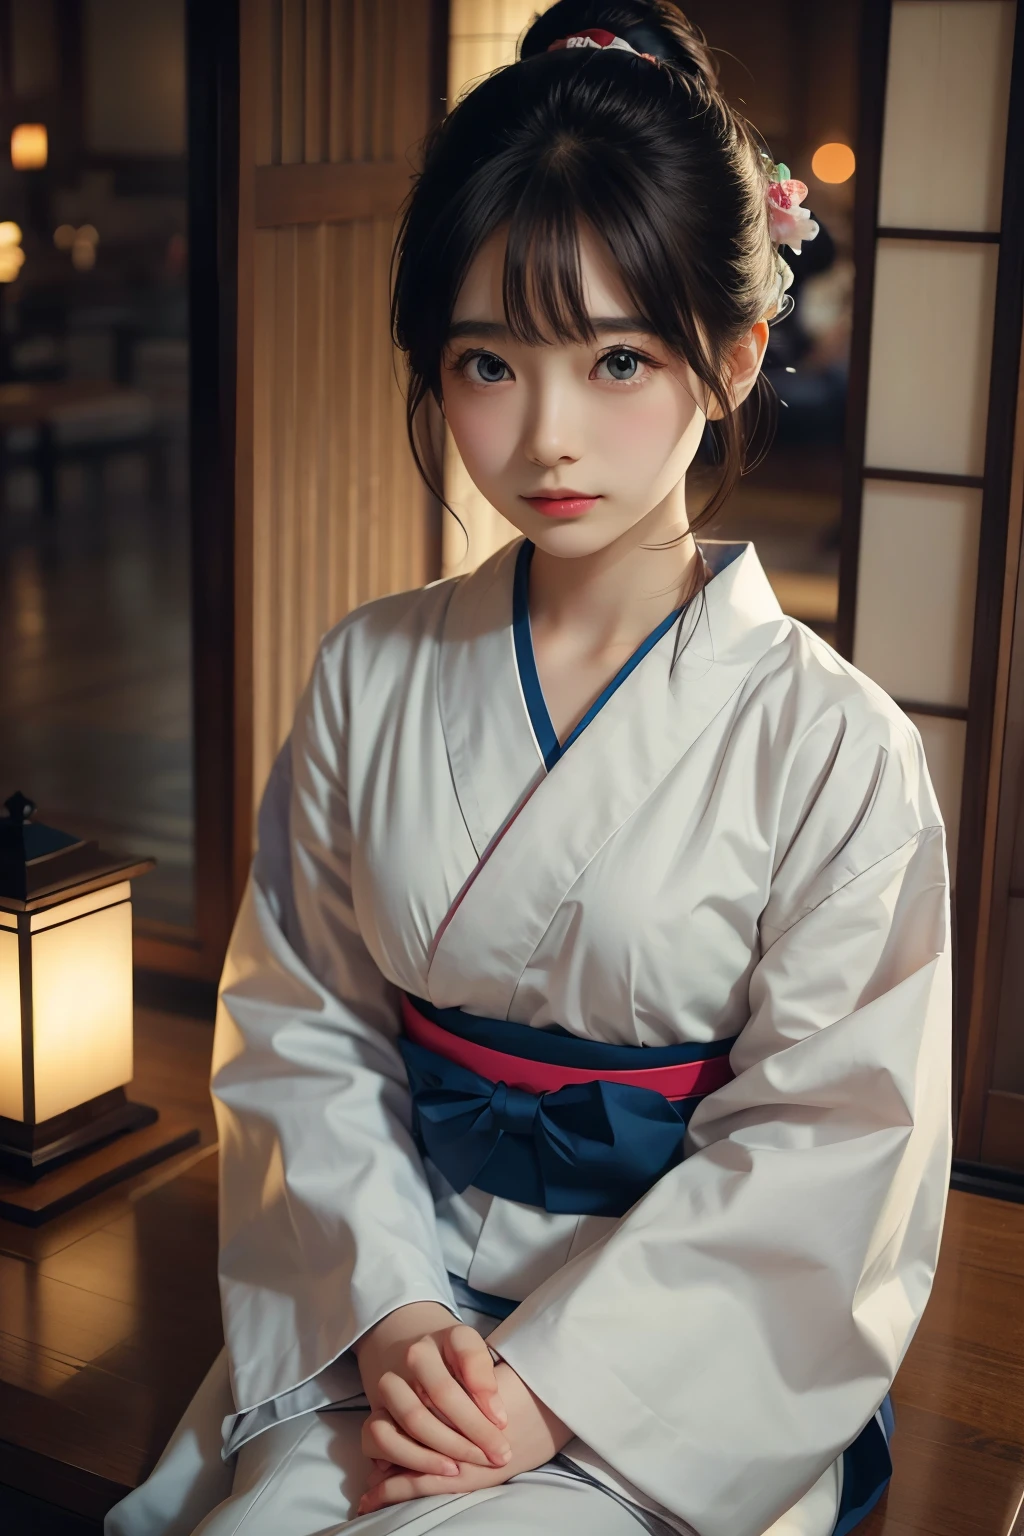 現実的, 一人で, 美しい日本人女性, 伝統的な着物, 自然な外観, 優しい笑顔, 印象的な光景, 伝統的な髪型, 夕暮れの和室, 窓際に座る, 街の明かりに照らされた, (魅力的なポーズ), プロカメラマン, 被写界深度が浅い, バックライト付き,